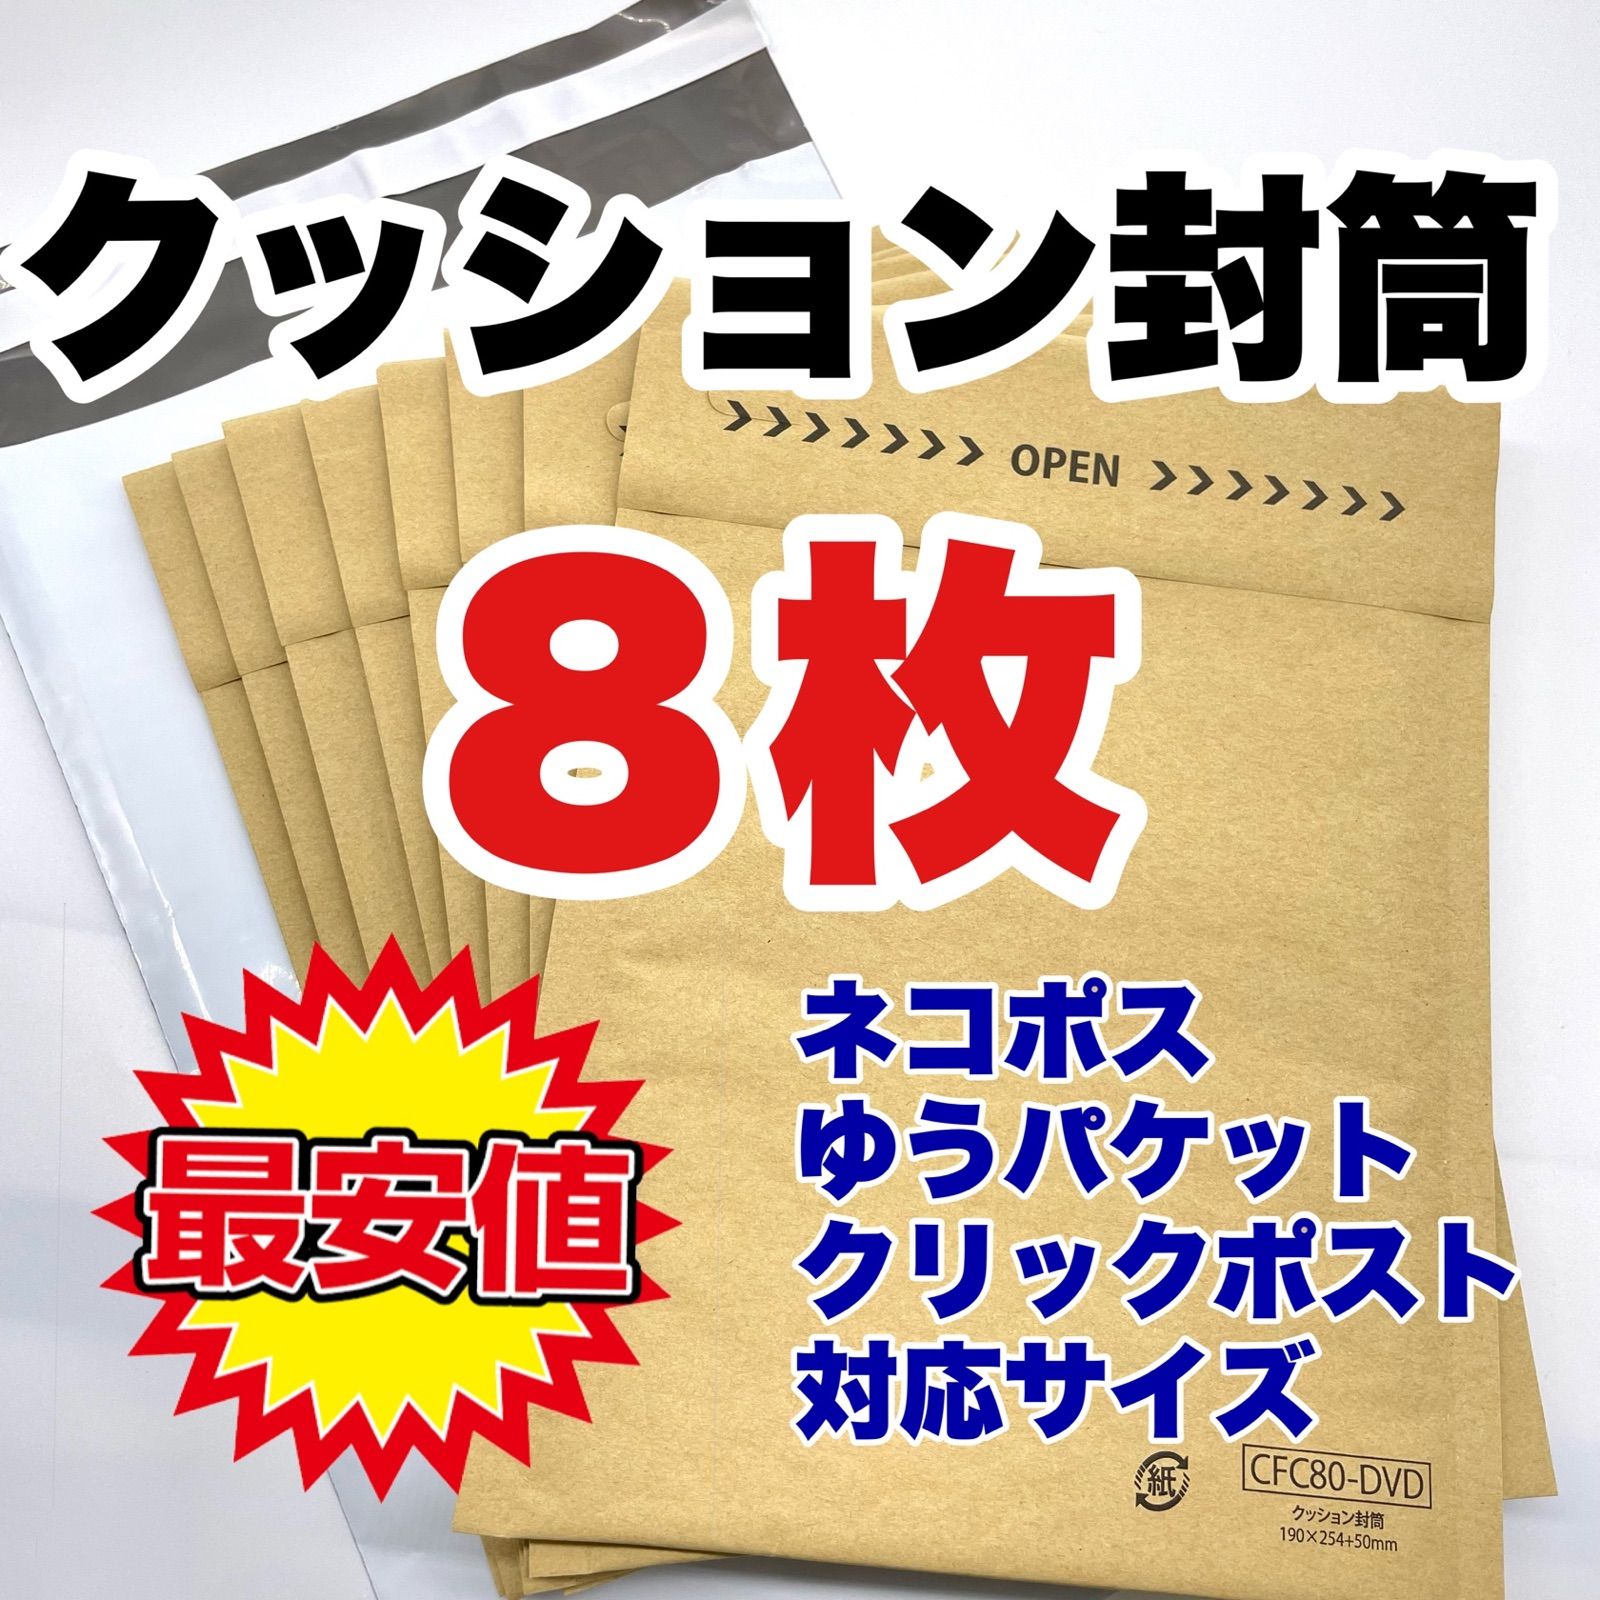 DVDクッション封筒 ネコポス クッション封筒 プチプチ 梱包材 (420枚)